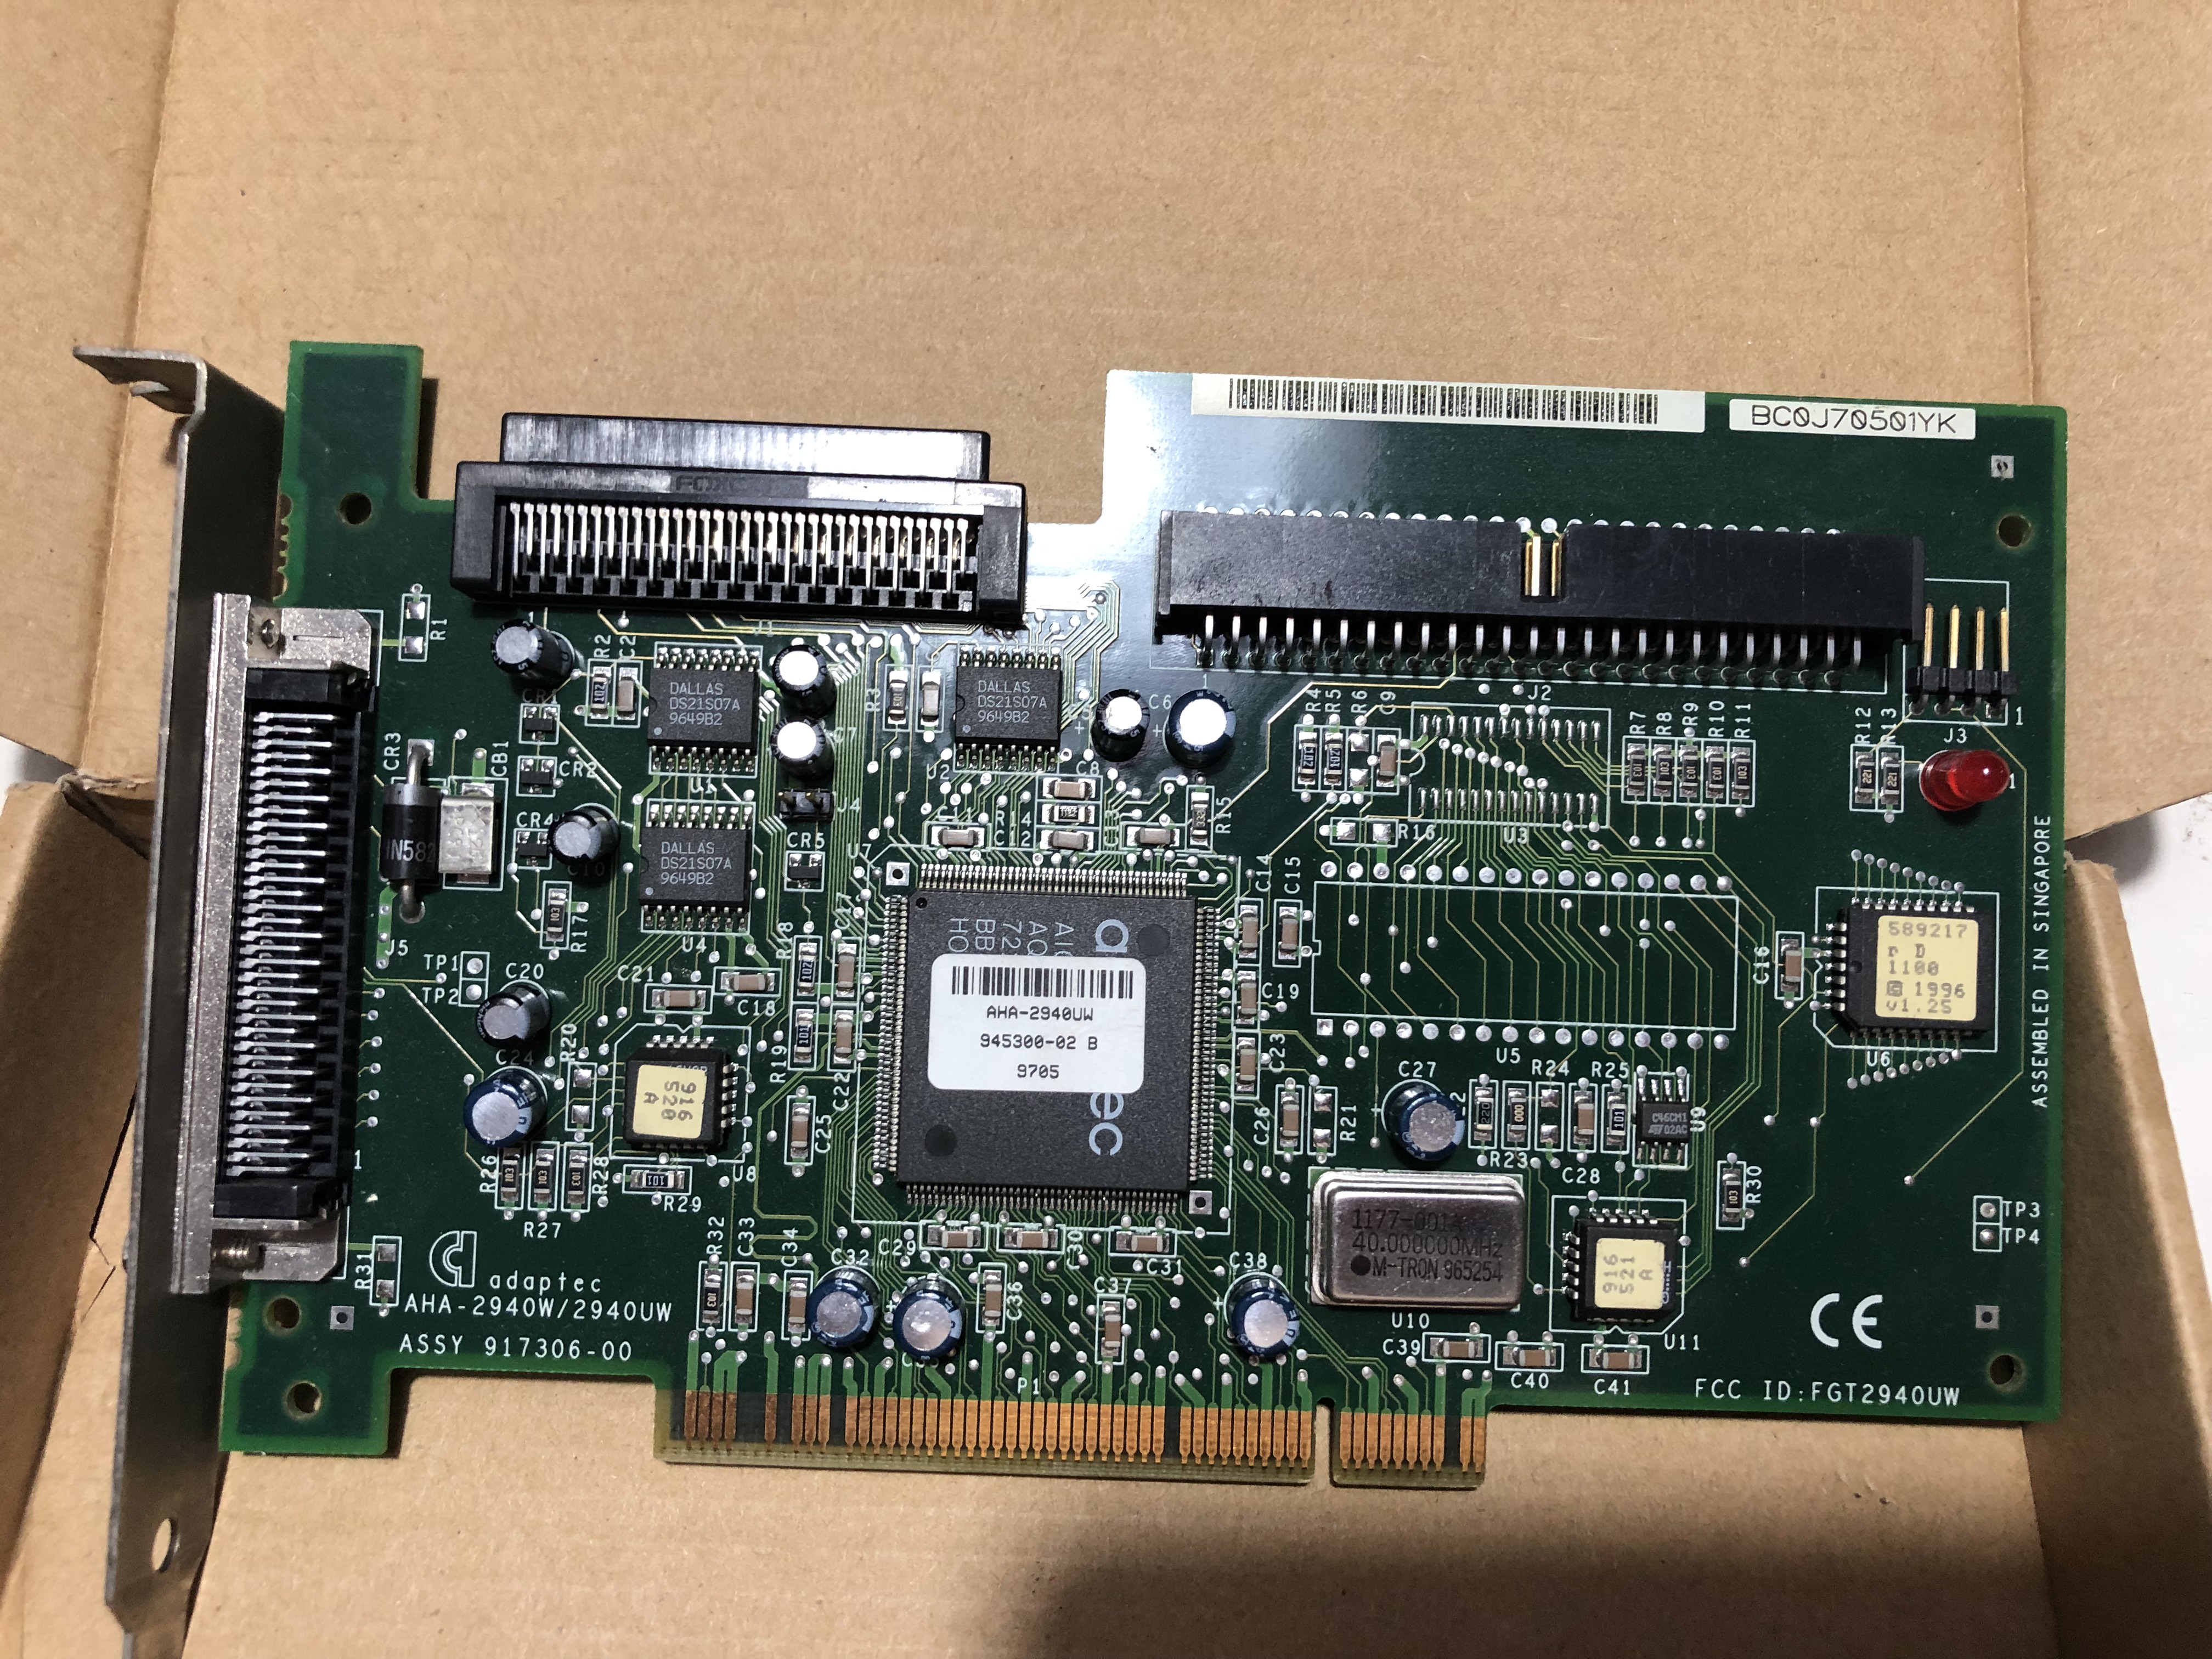 Adaptec AHA2940 UW SCSI II PCI Controller board